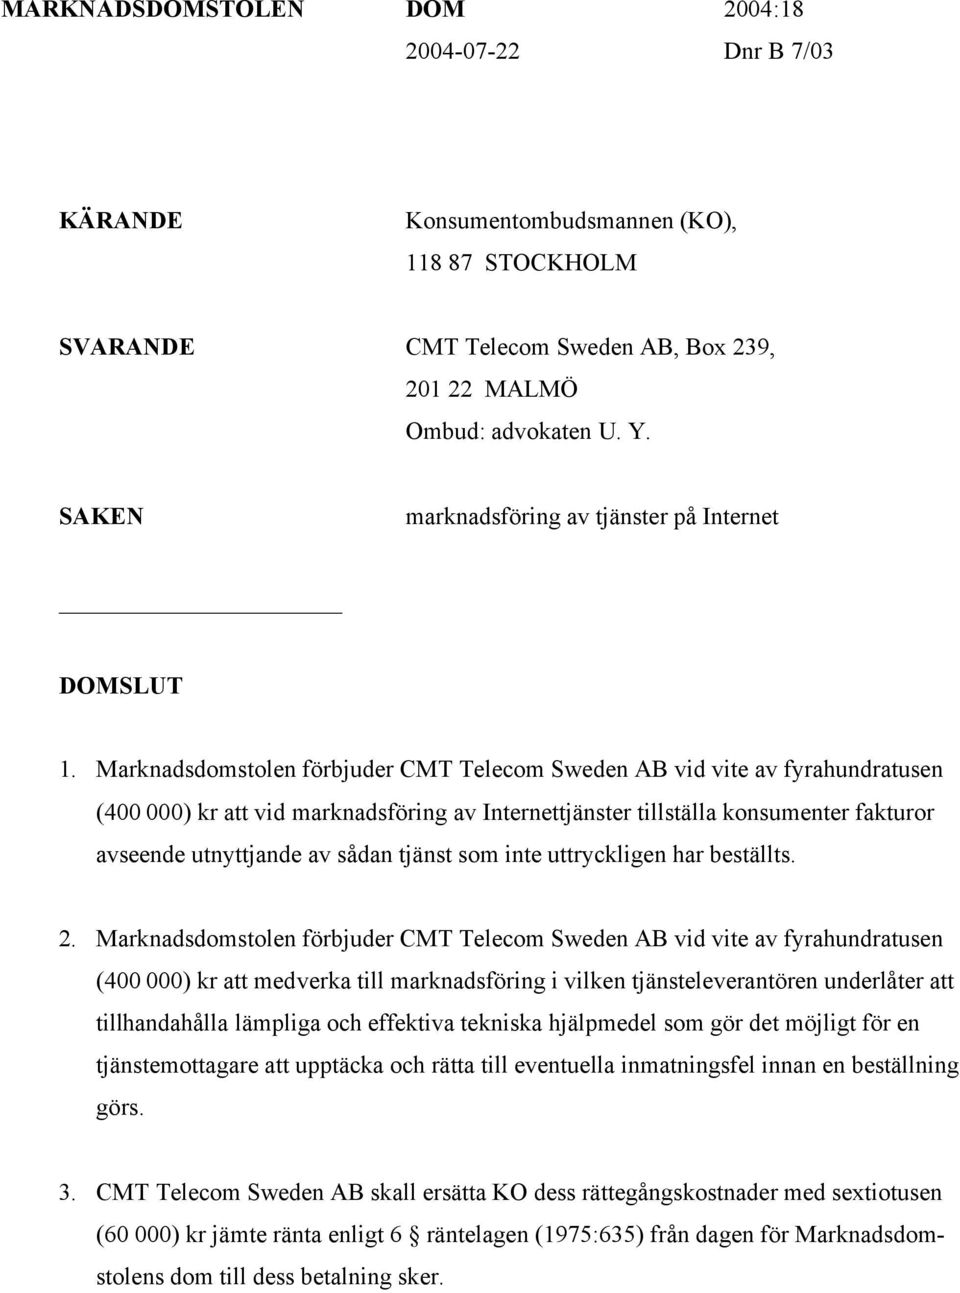 Marknadsdomstolen förbjuder CMT Telecom Sweden AB vid vite av fyrahundratusen (400 000) kr att vid marknadsföring av Internettjänster tillställa konsumenter fakturor avseende utnyttjande av sådan